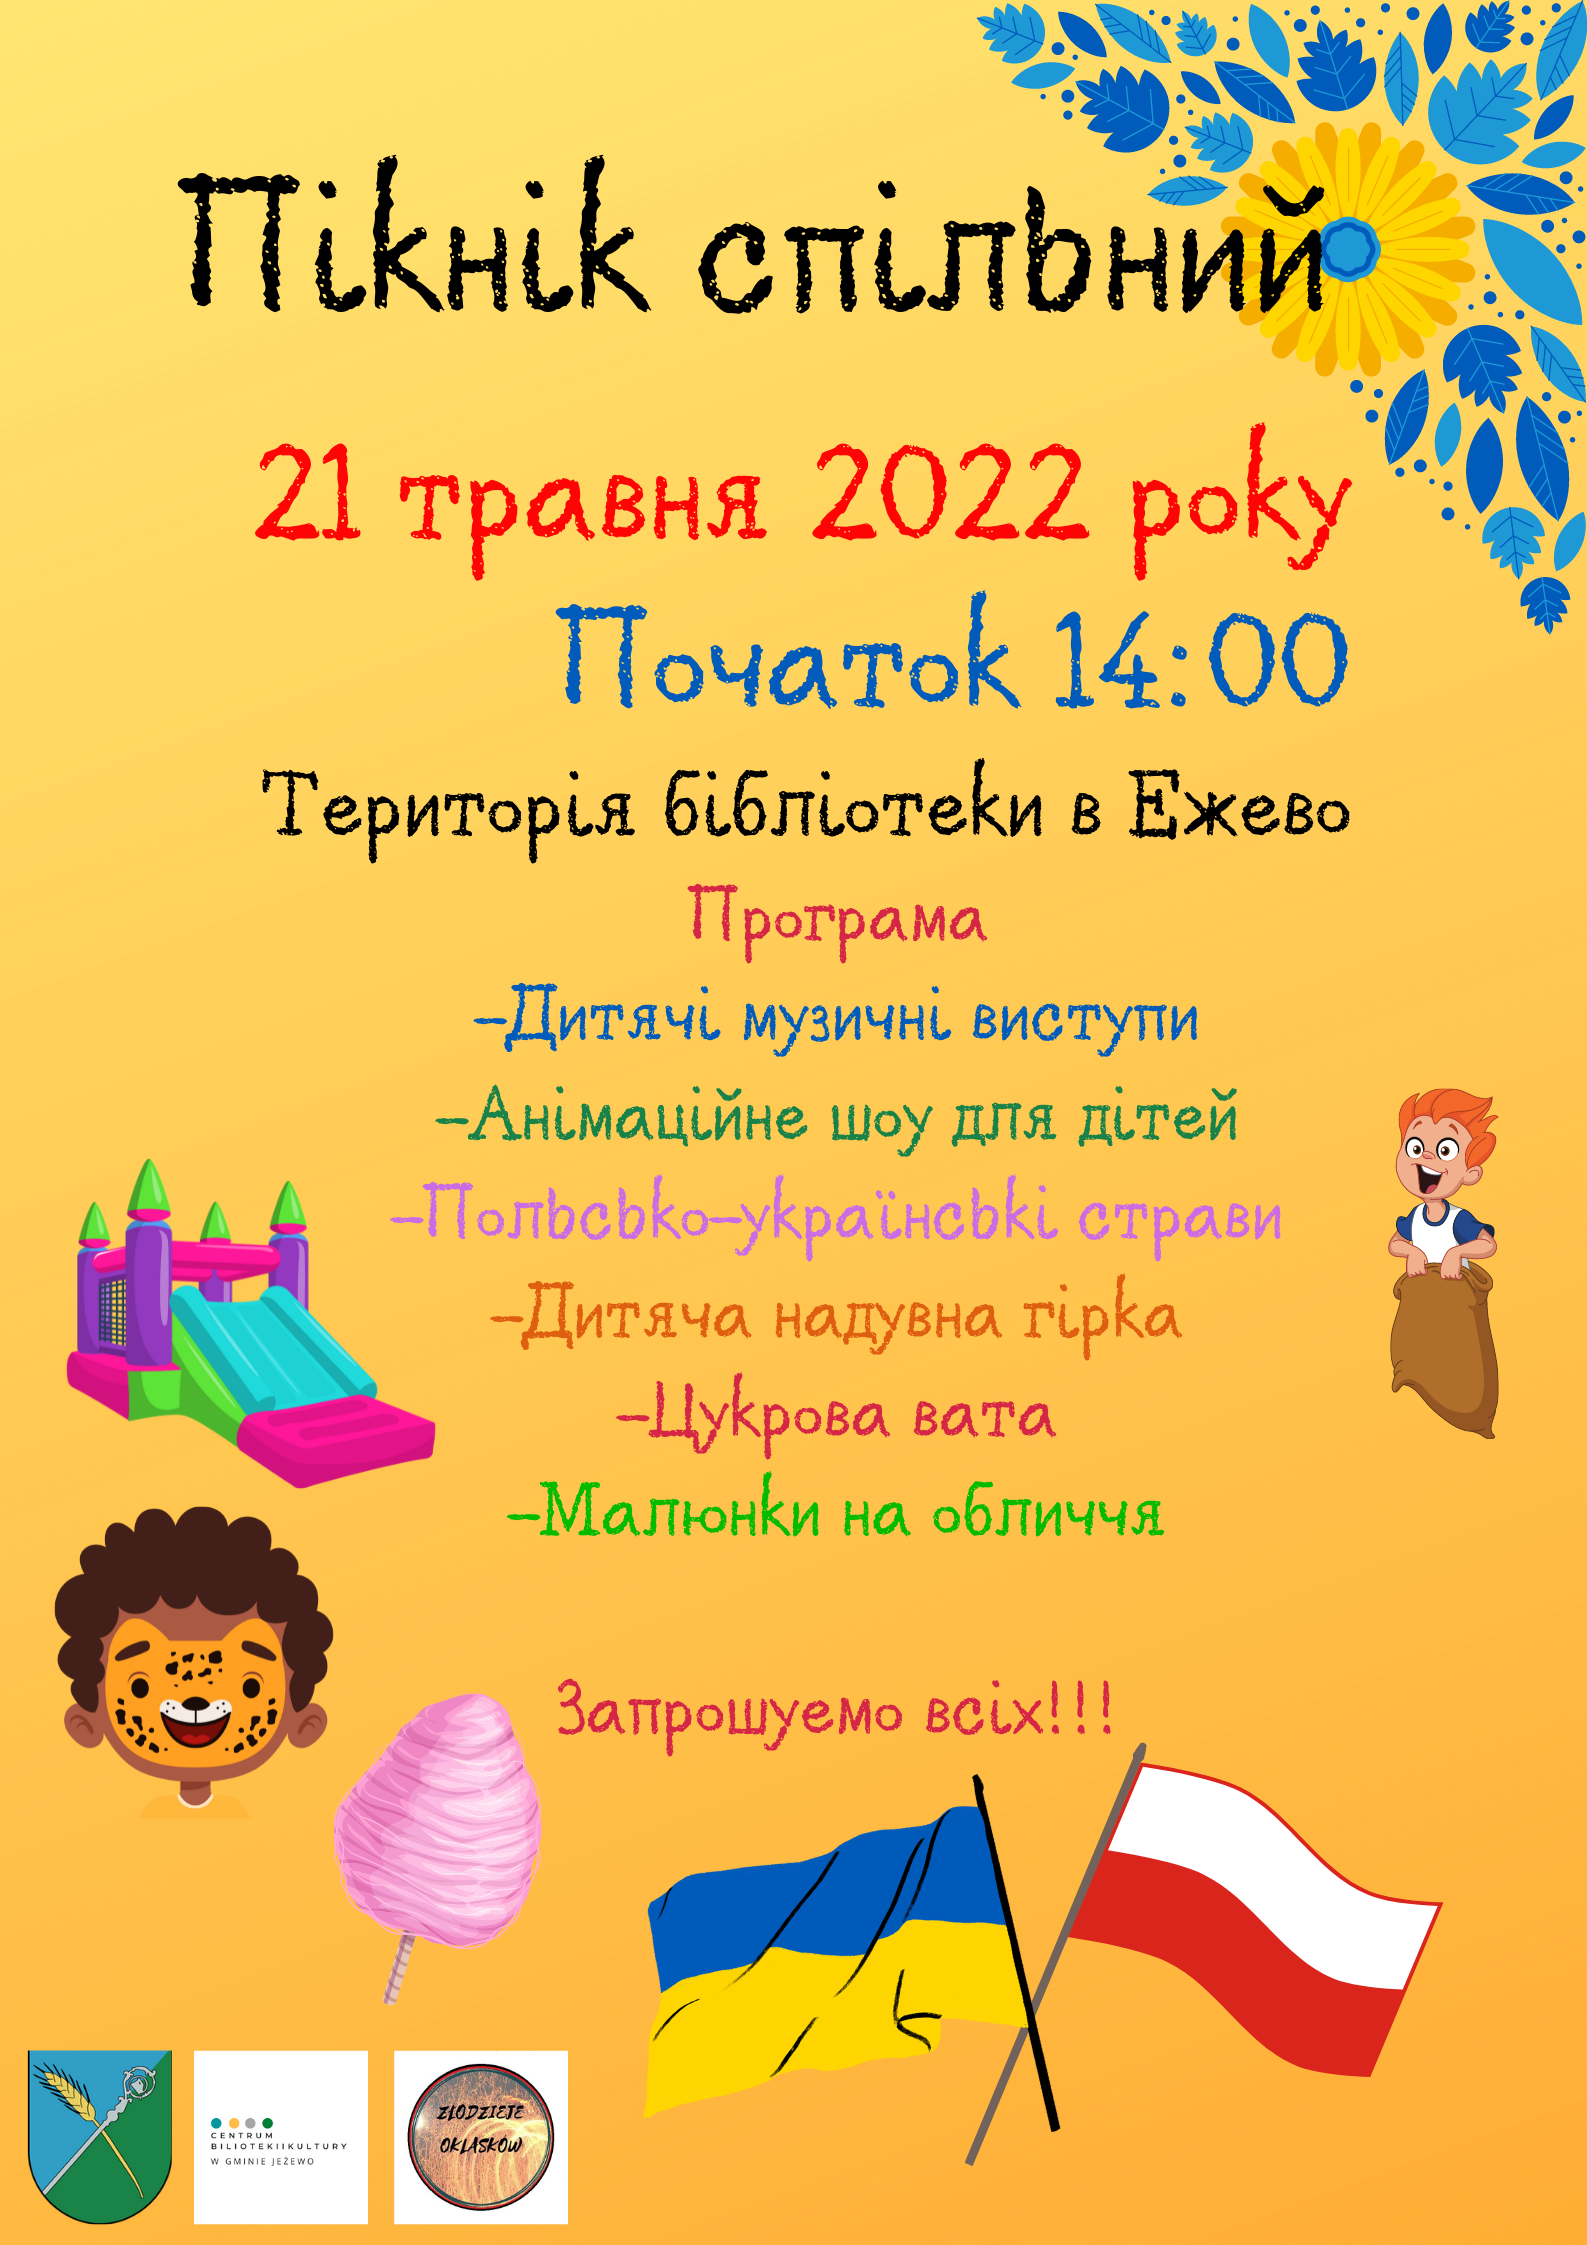 Piknik integracyjny 21.05.2022 r.